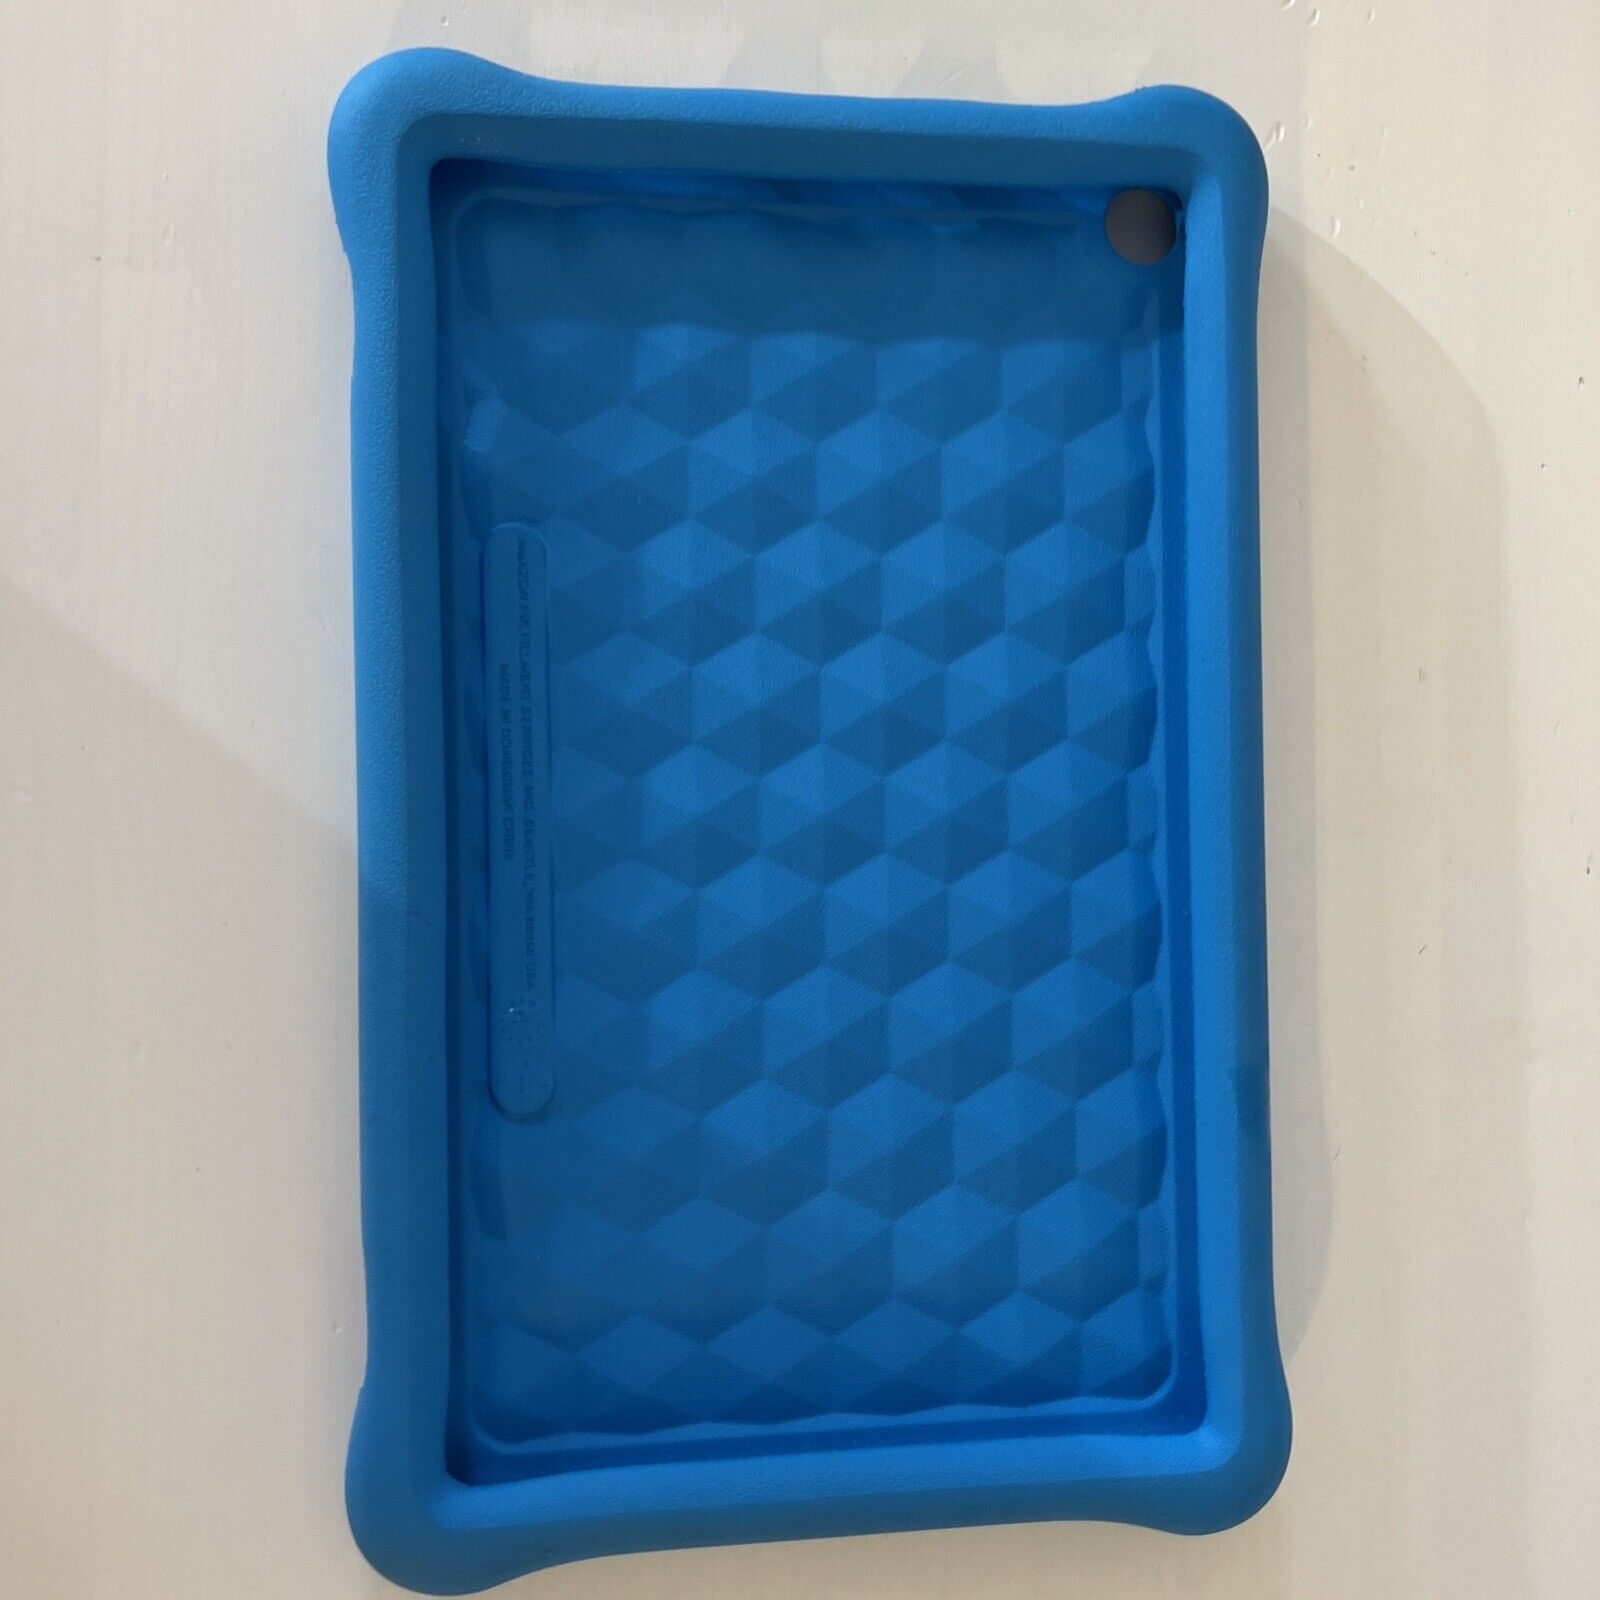 Amazon FreeTime Foam Bumper Hot Blue Tablet Case 10”Inch Kindle Fire HD